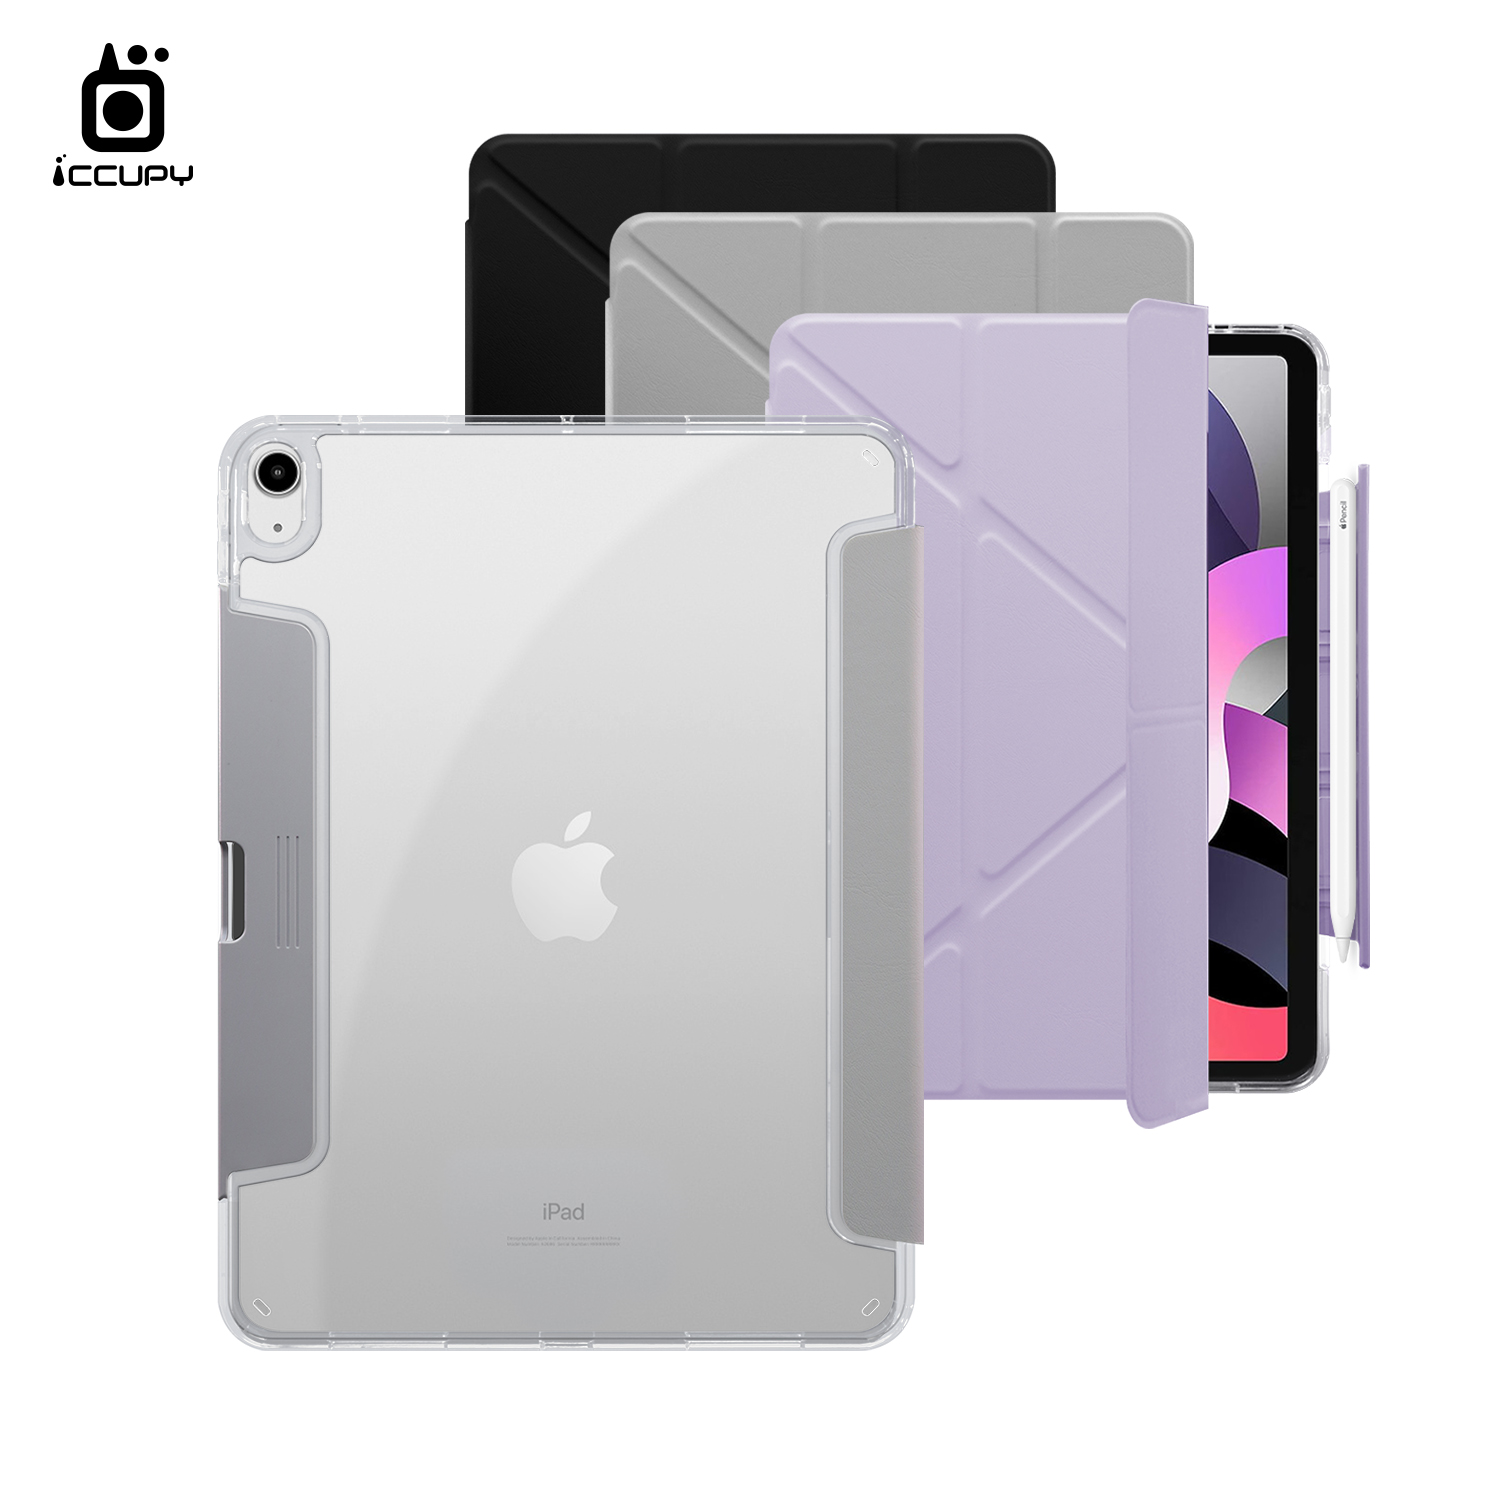 【iCCUPY黑占盾For iPad】黑占盾平板HD系列-隱藏式抽屜筆槽(共三色) For iPad 第10代 10.9吋